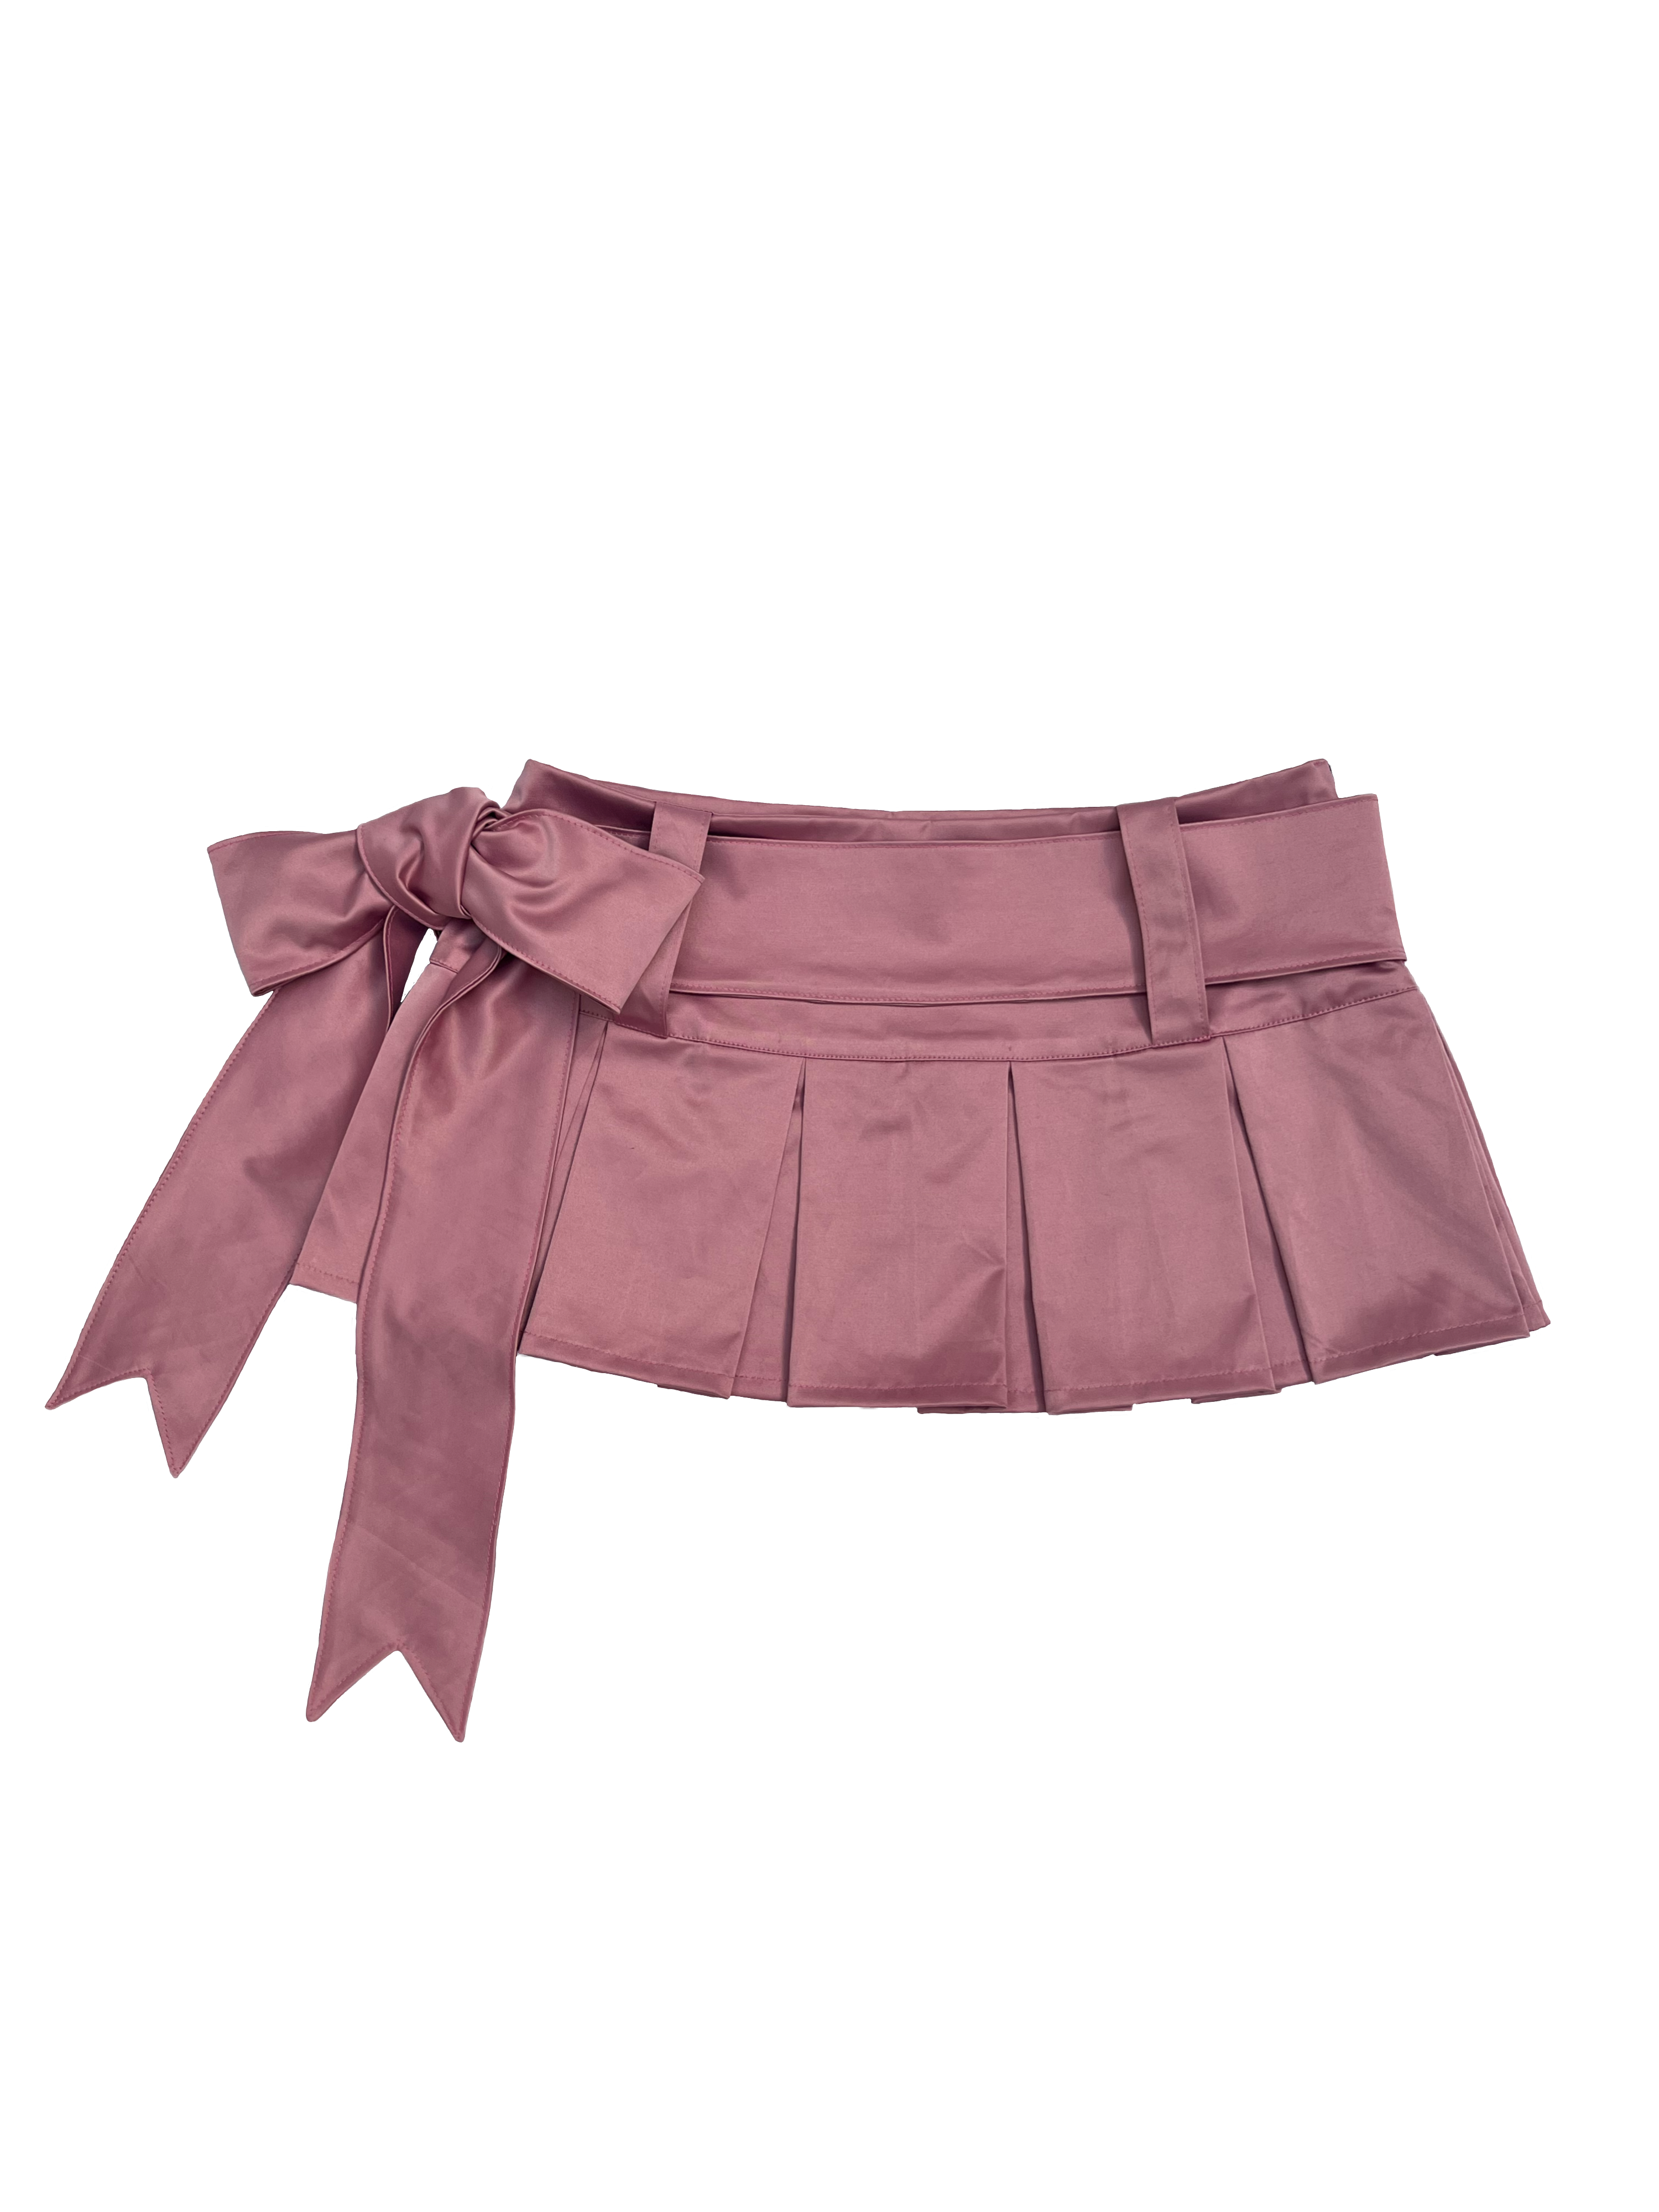 Ribbon skirt in blush – Kairo Atelier